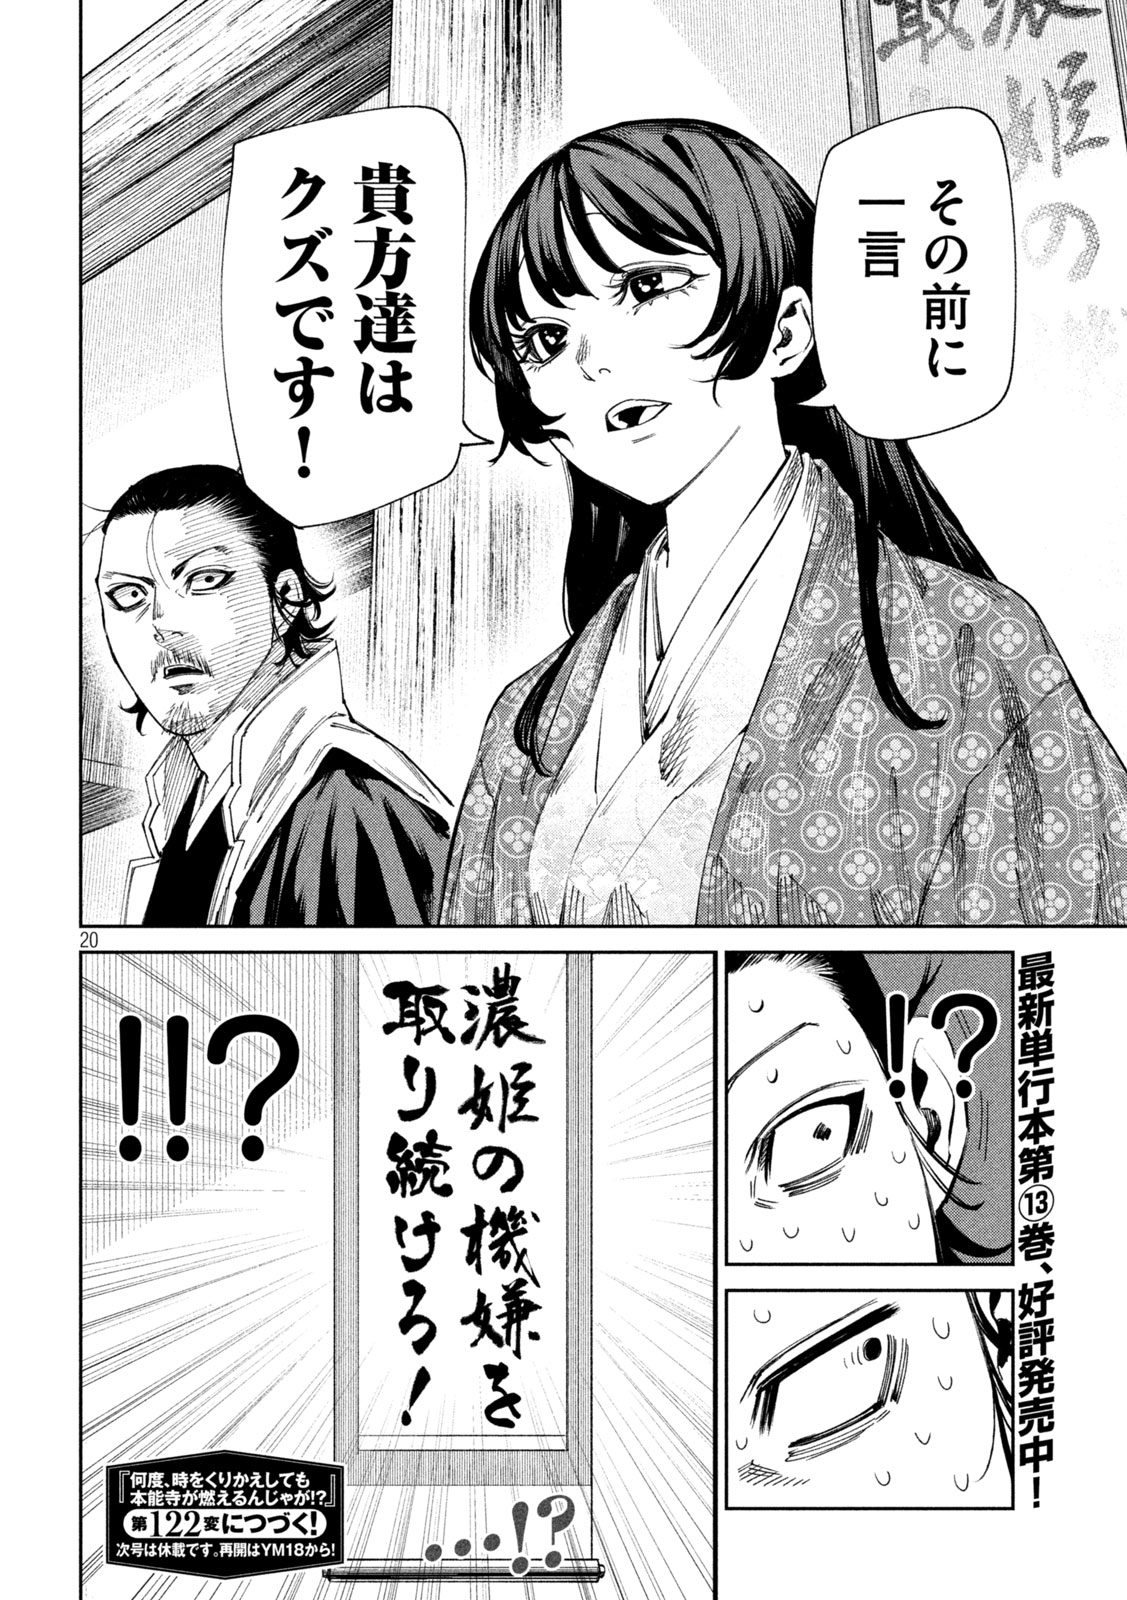 Nando toki o kurikaeshitemo Honnouji ga moerunjaga! - Chapter 121 - Page 20